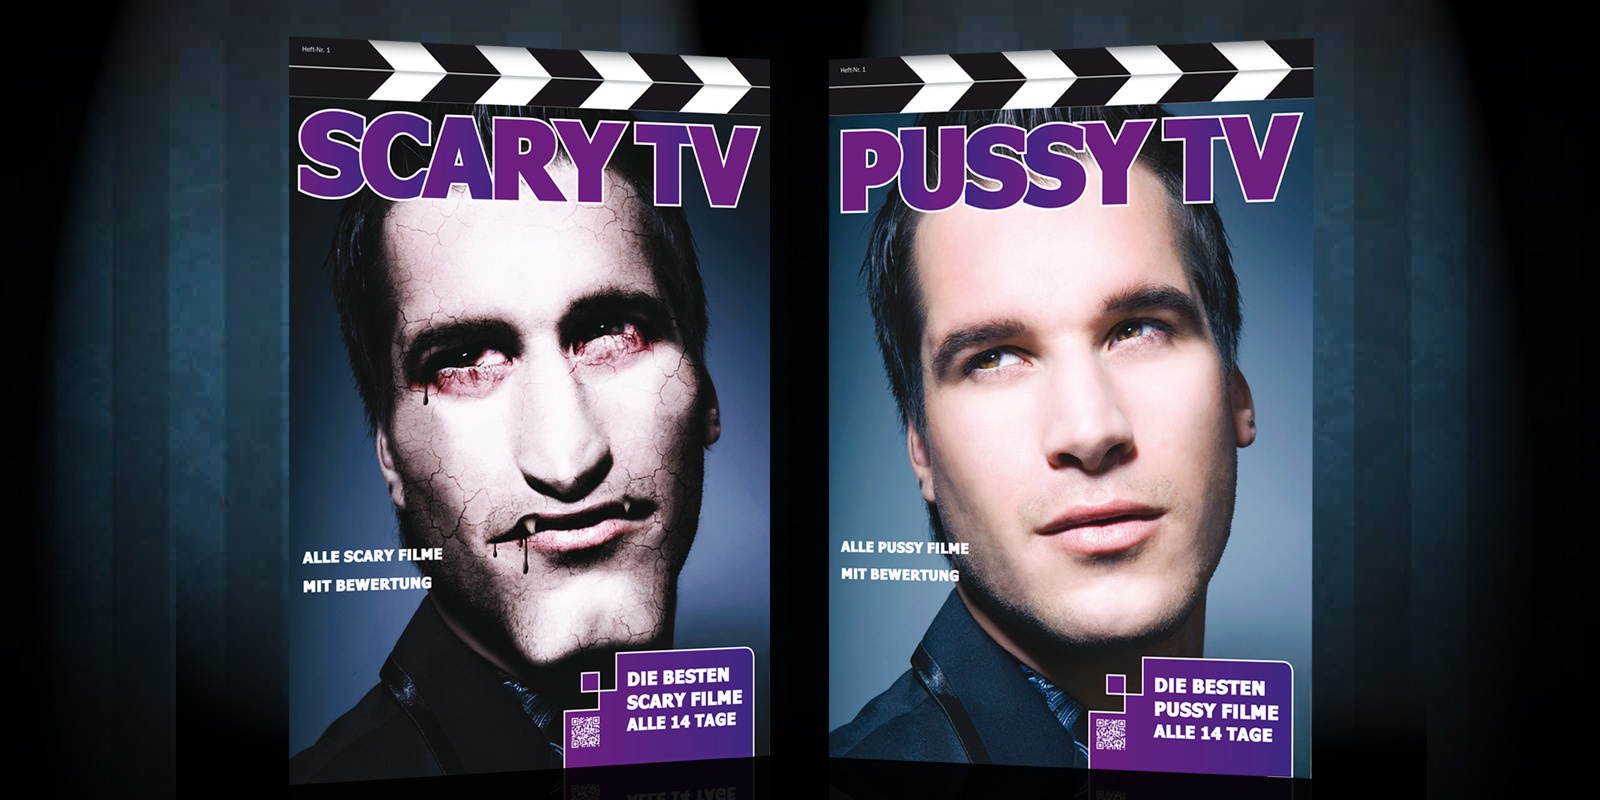 zwei identische TV Magazin Cover mit Unterschieden nebeneinander. Beide zeigen den gleichen jungen Mann. Das linke ist retuschiert in ein Vampir verwandelt.